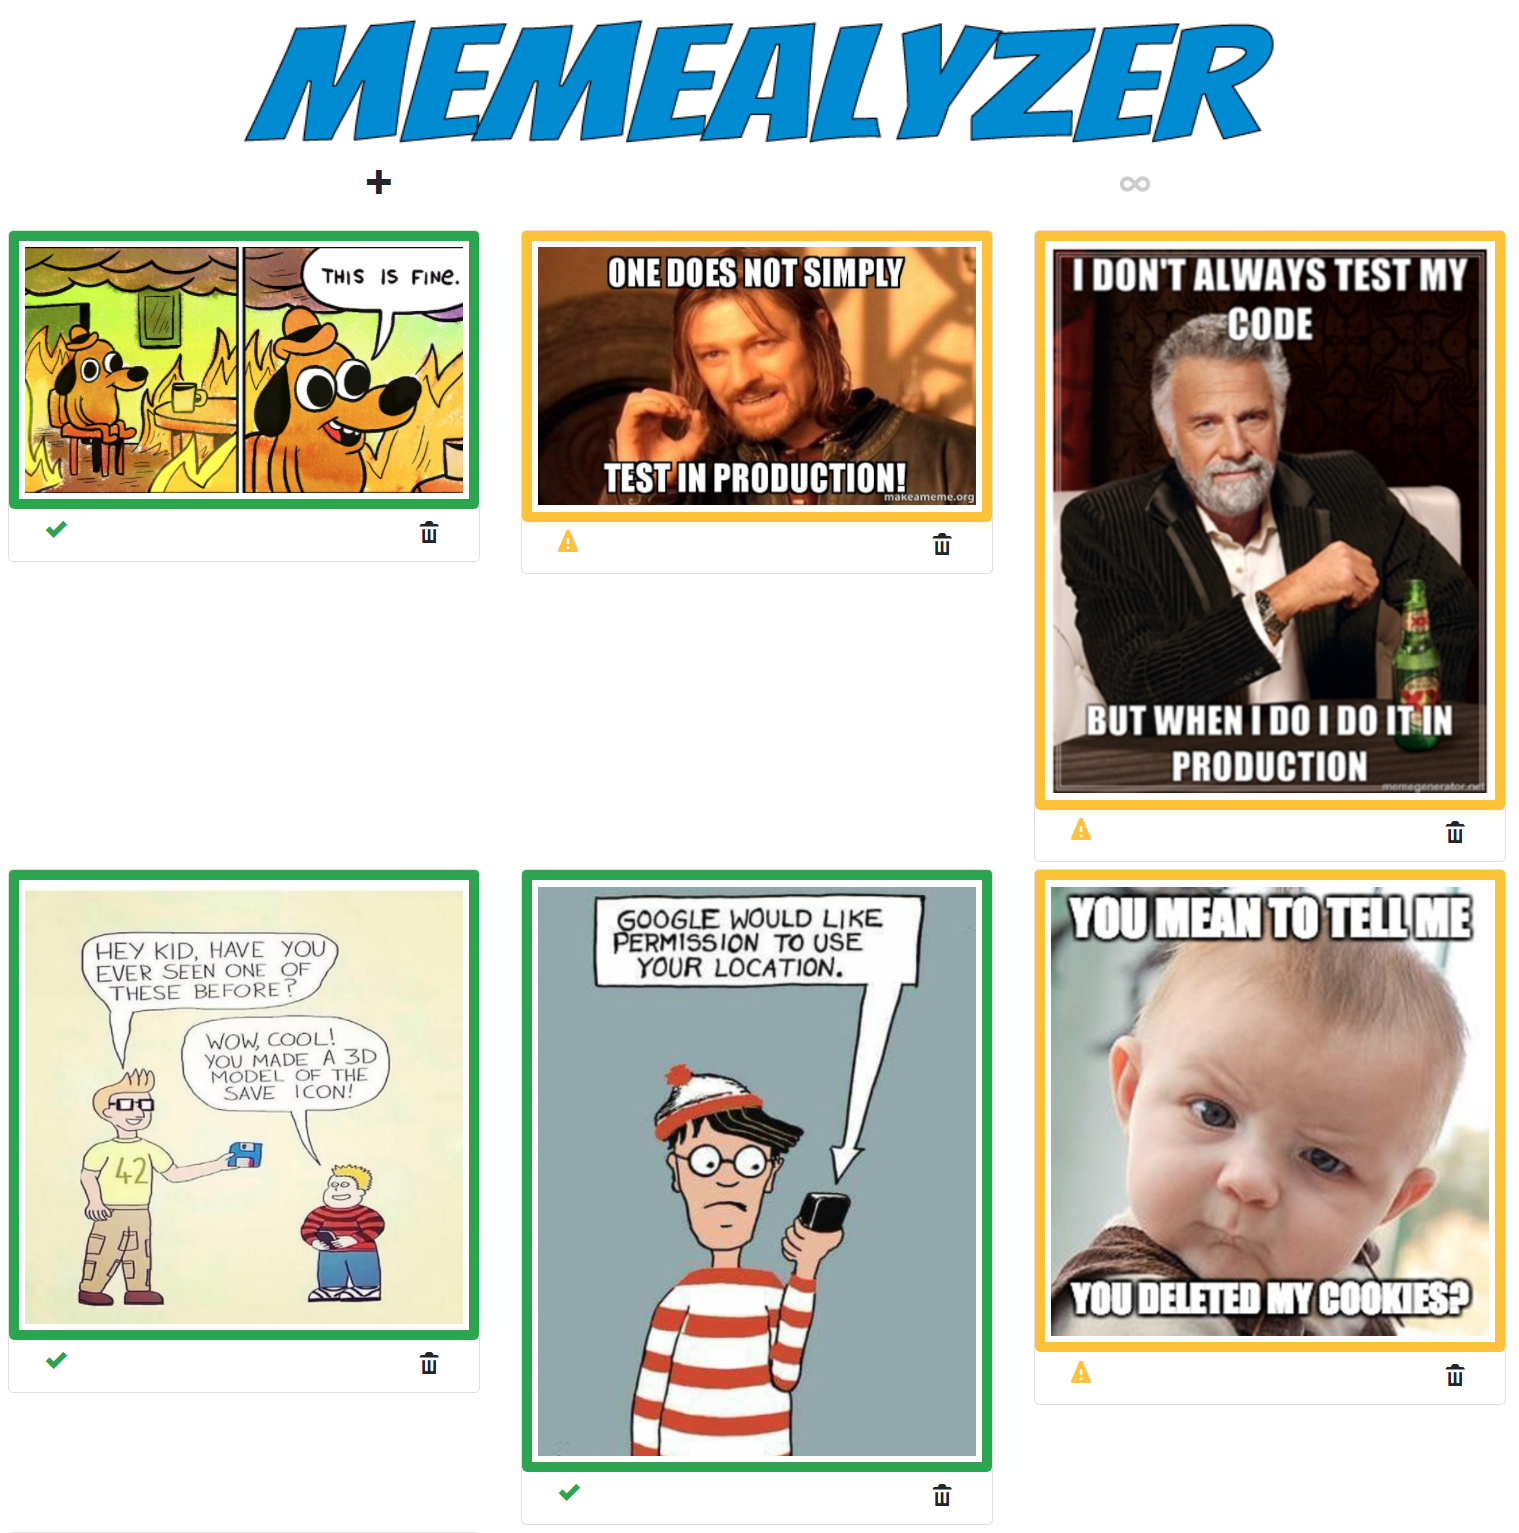 "Memealyzer Hero"